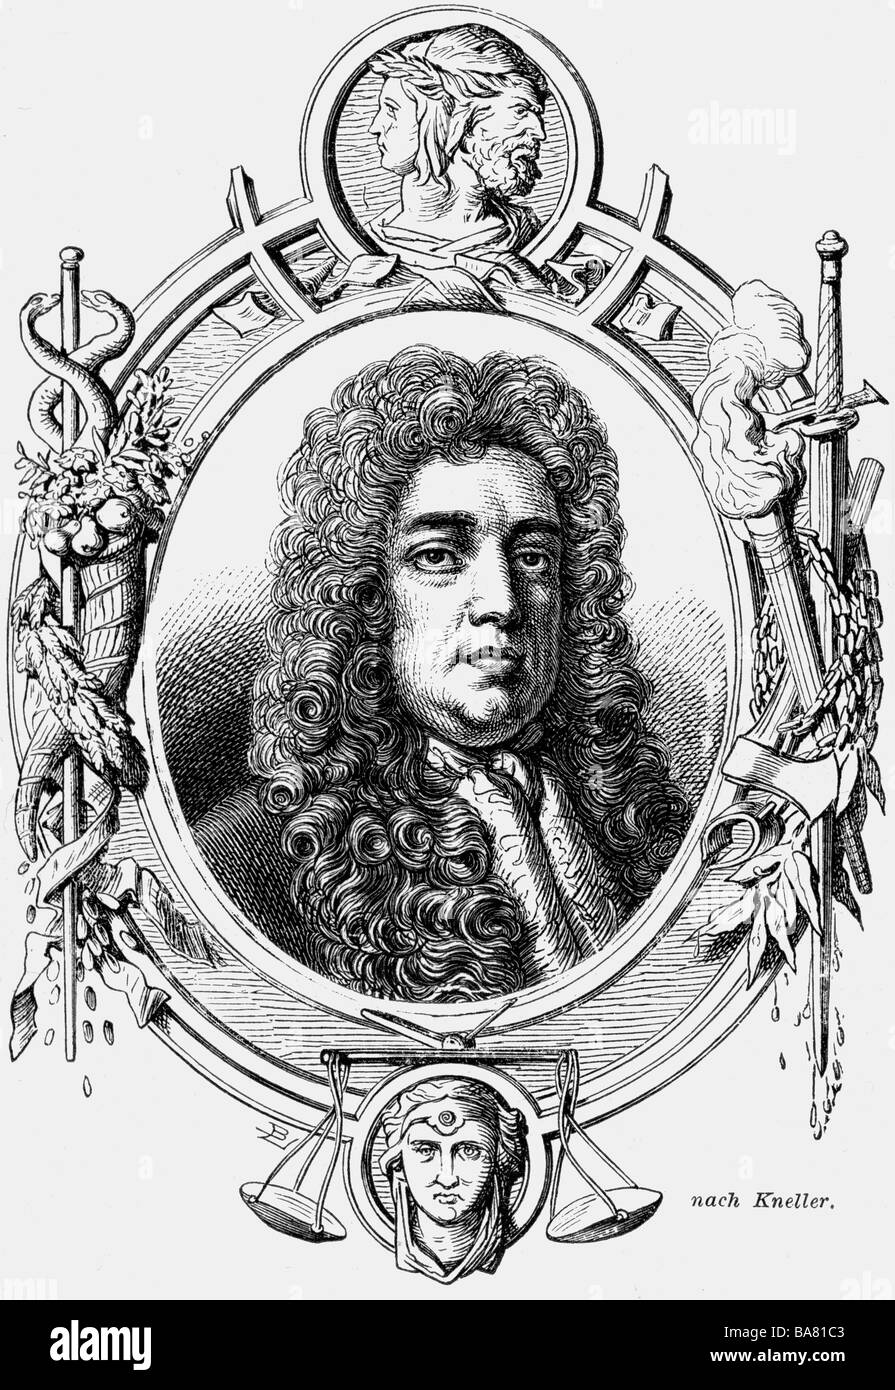 Godolphin, Sidney, vers 1645 - 15.9.1712, politicien britannique, portrait, gravure en bois, XIXe siècle, Banque D'Images